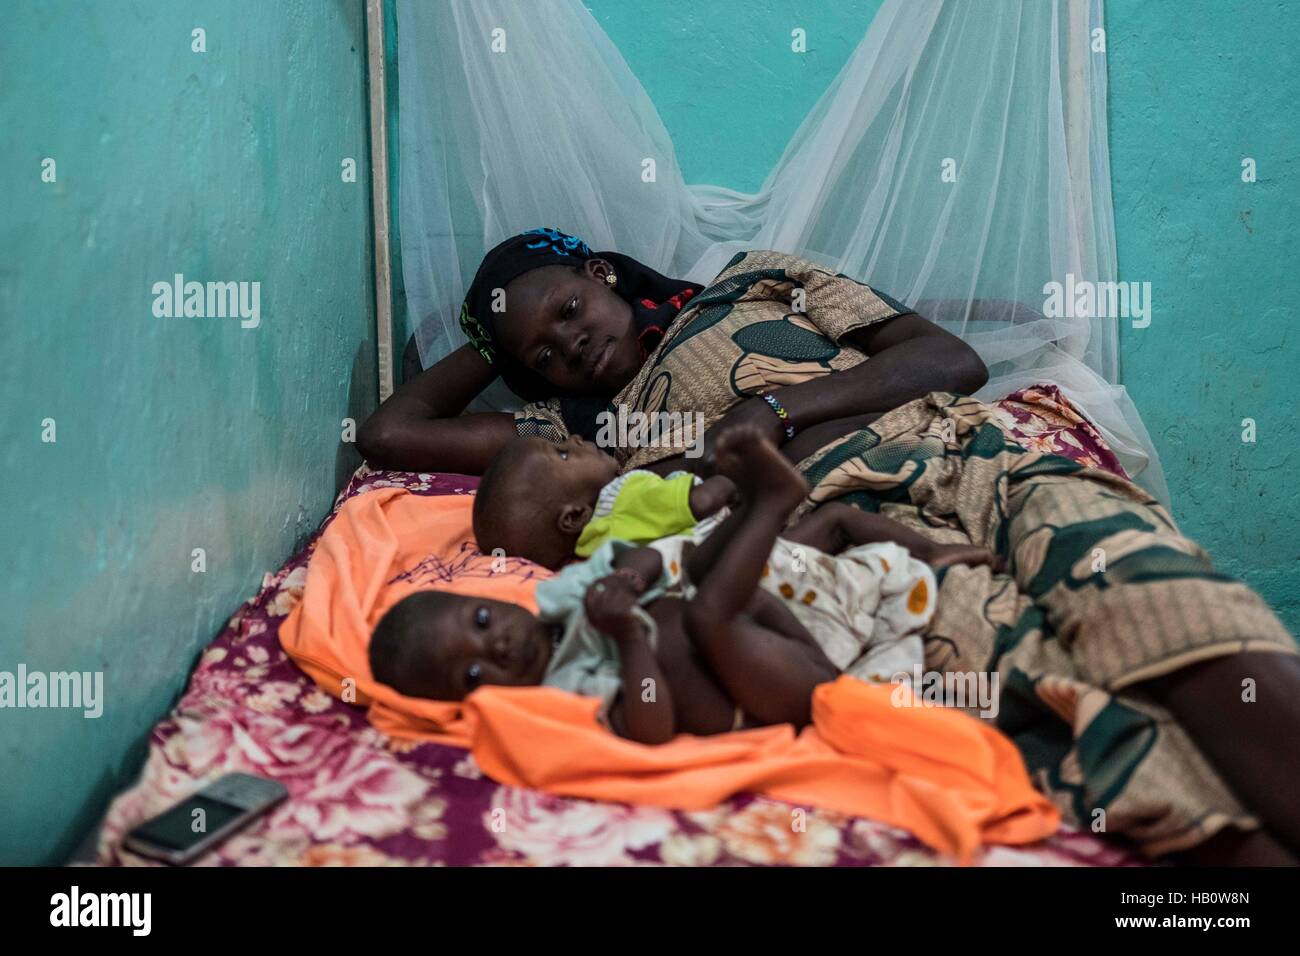 DIOILA - Mali: una donna stabilisce con i suoi due bambini che soffrono la malnutrizione ath intensivo unità nutrizionale dell'ospedale Dioila il 7 novembre 2016 in Foto Stock